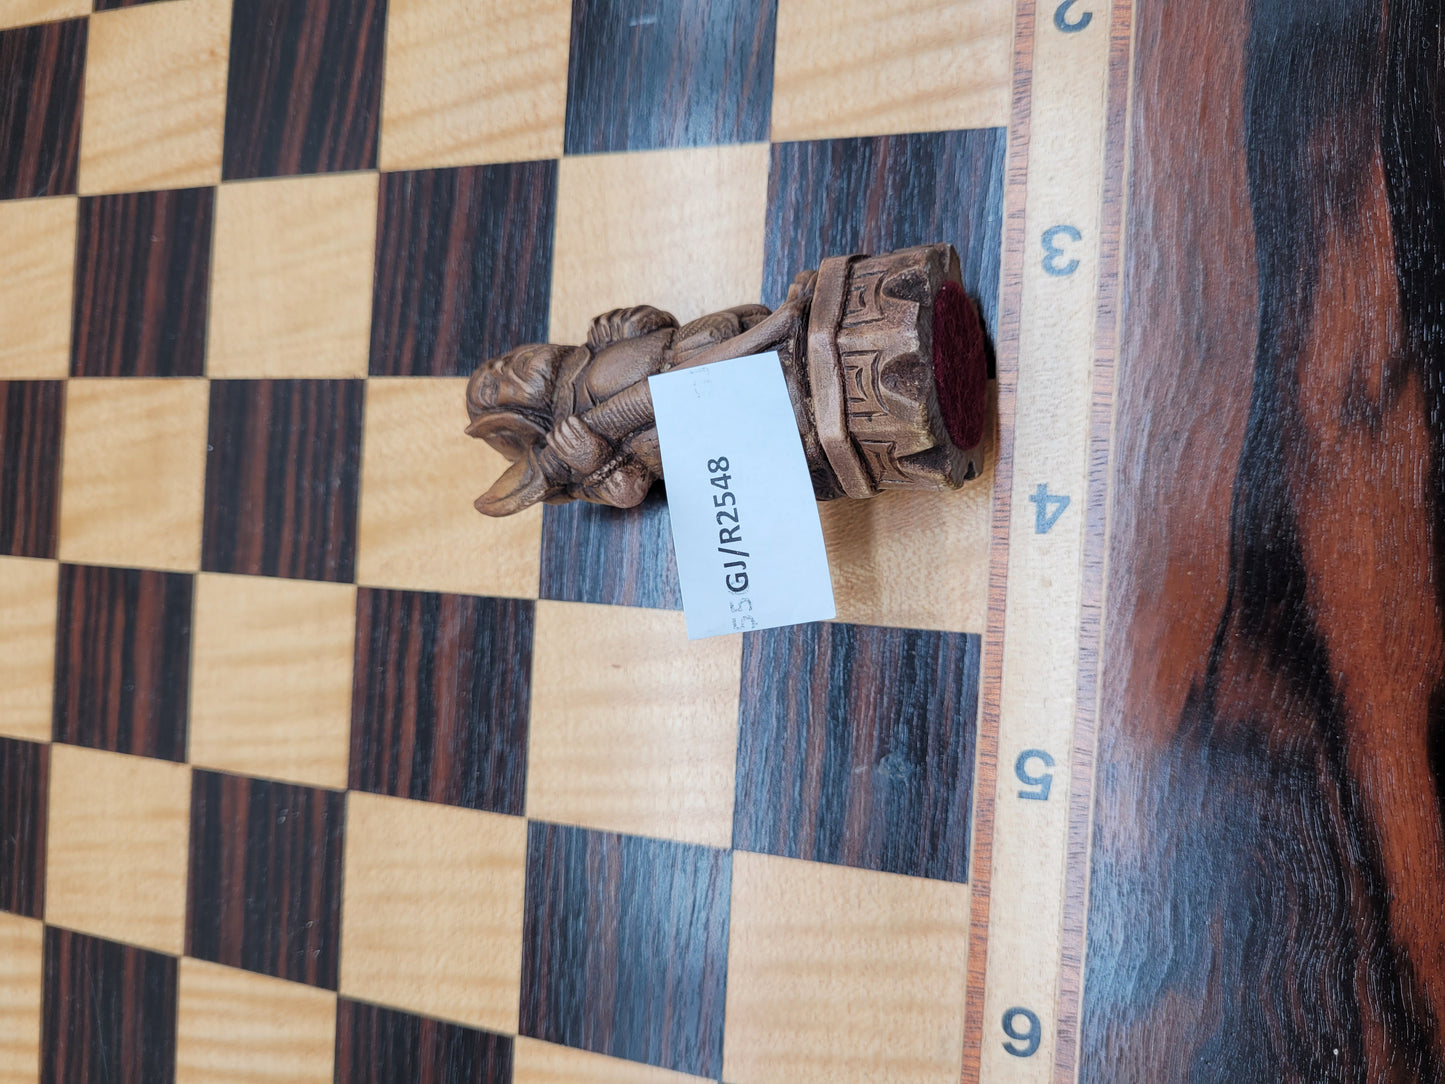 Chinesisches Schachspiel - 32-teiliges Sammlerstück aus Holz mit Schachbrett